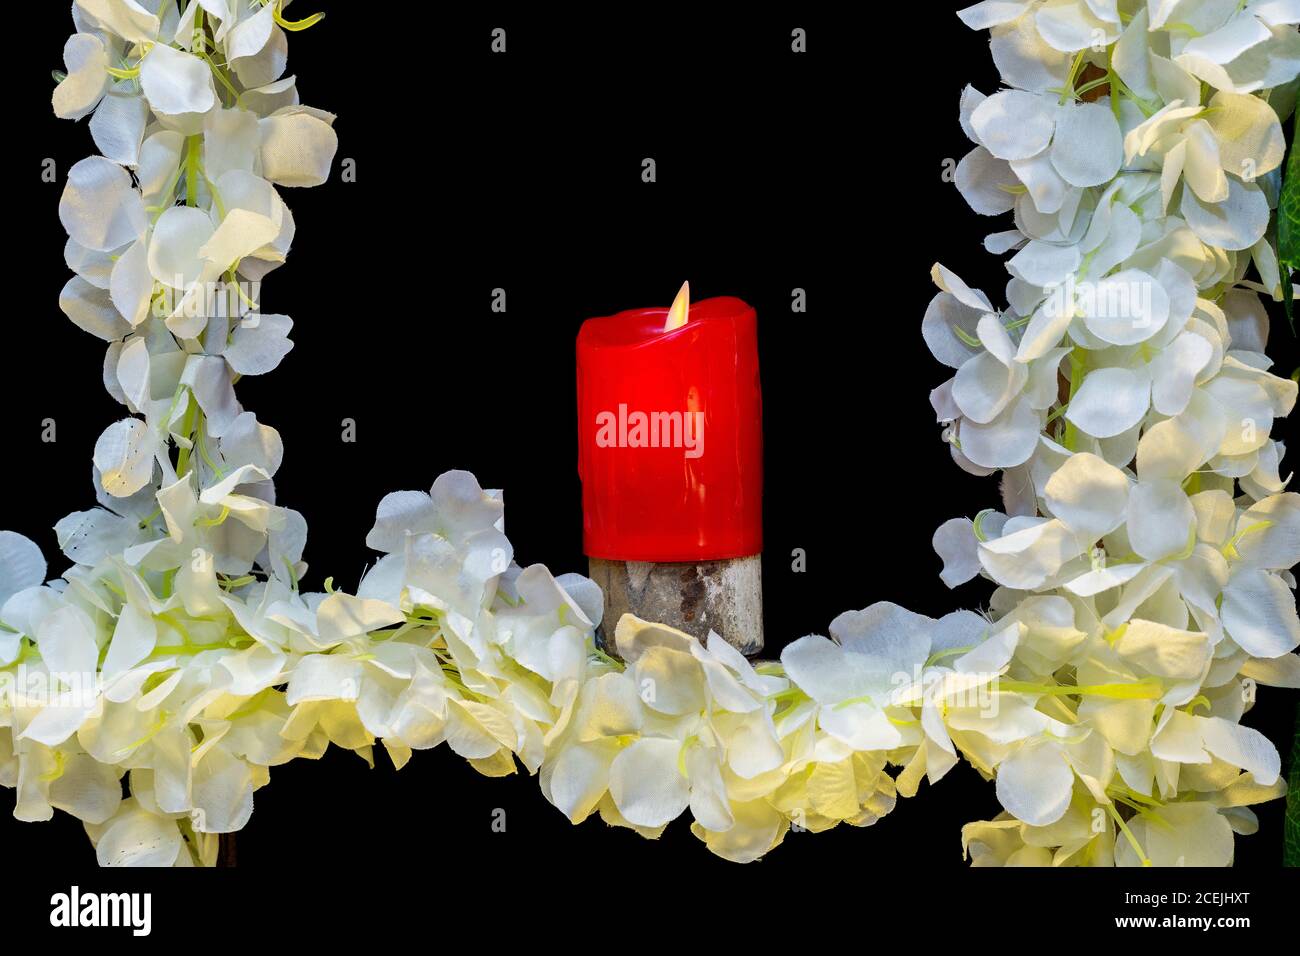 Hochzeitsbühne mit künstlichen Kerzen und Blumen Dekoration. Stockfoto